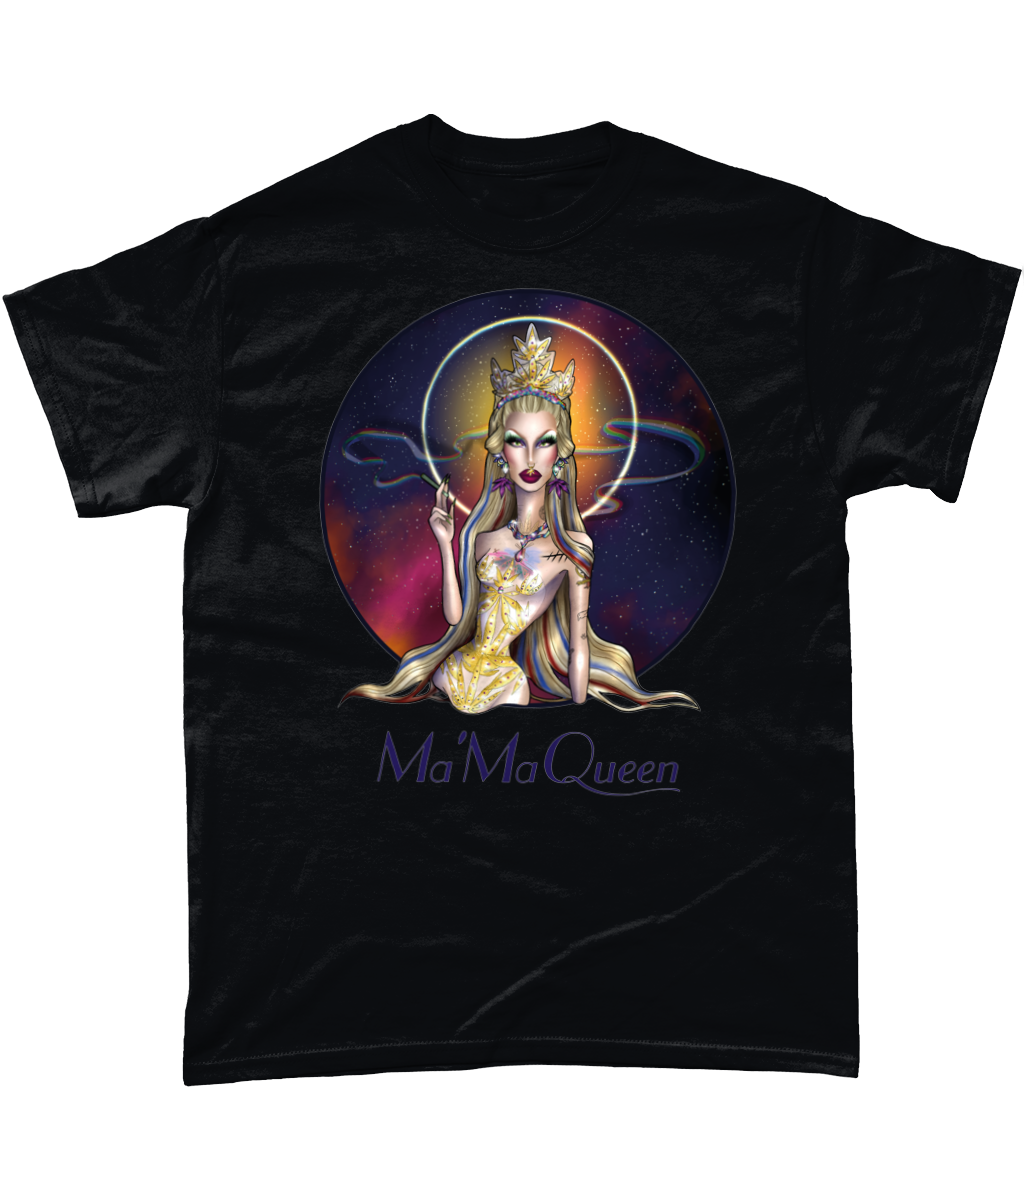 Ma'ma Queen - T-Shirt